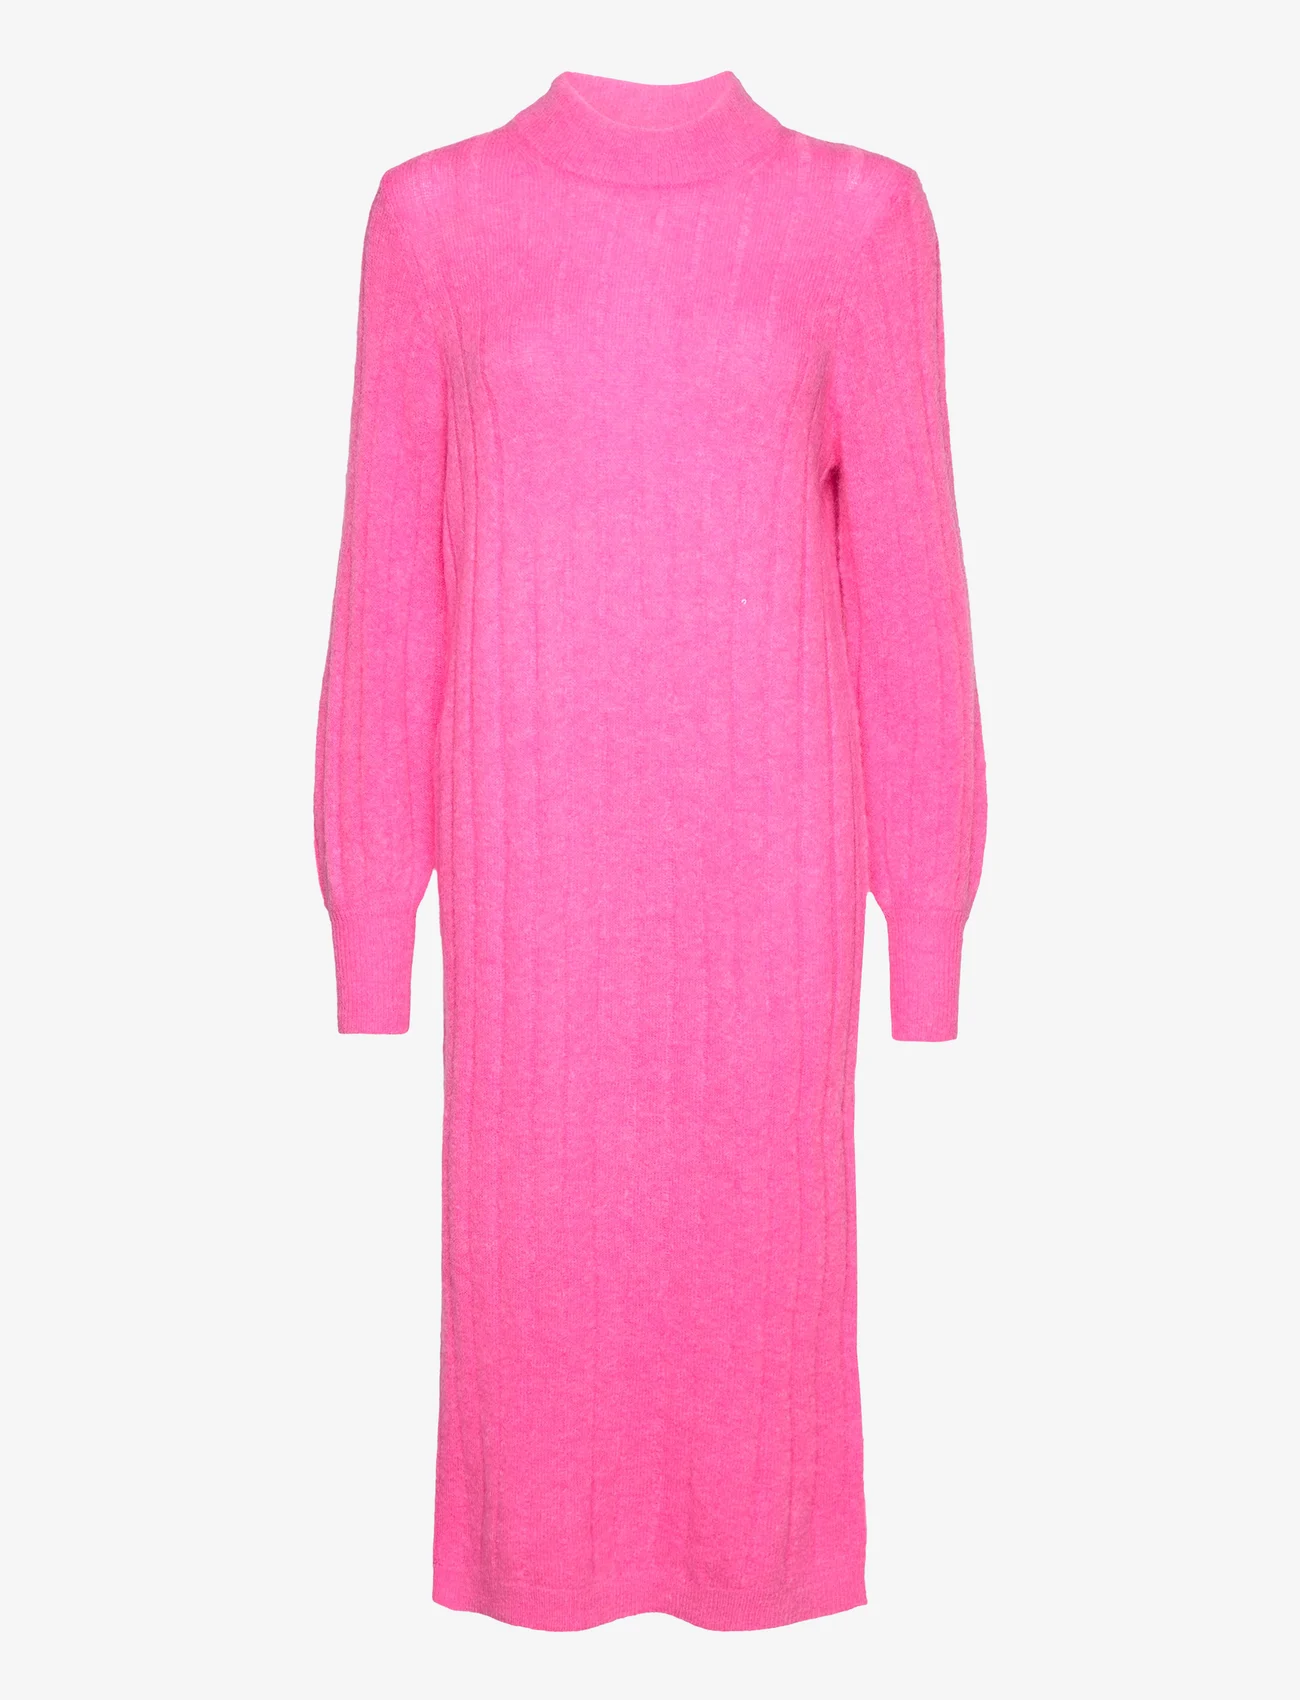 Selected Femme - SLFGLOWIE LS KNIT O-NECK DRESS B - stickade klänningar - phlox pink - 0